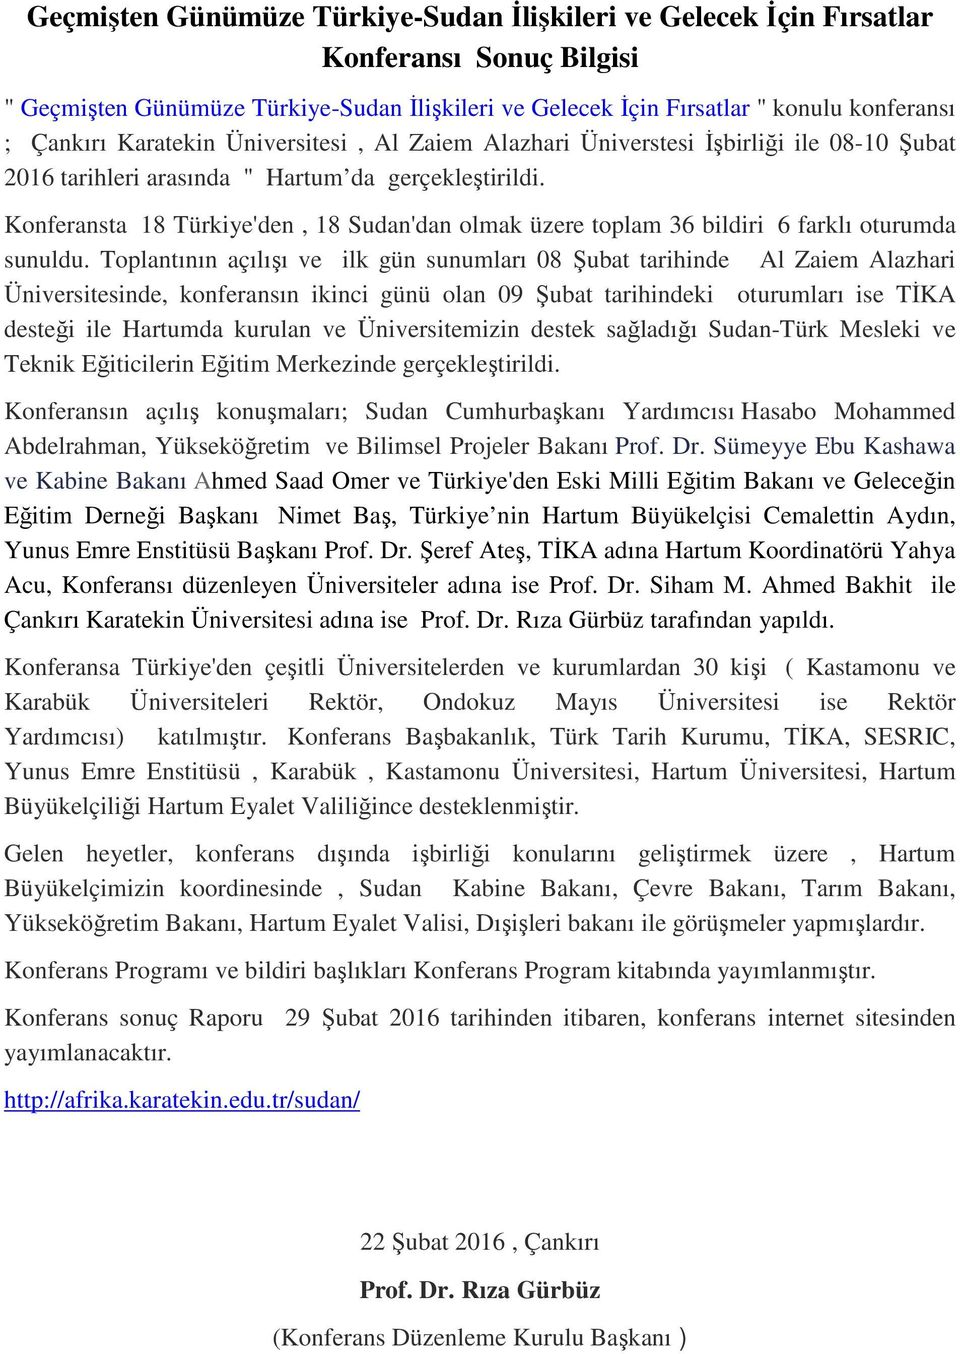 Konferansta 18 Türkiye'den, 18 Sudan'dan olmak üzere toplam 36 bildiri 6 farklı oturumda sunuldu.